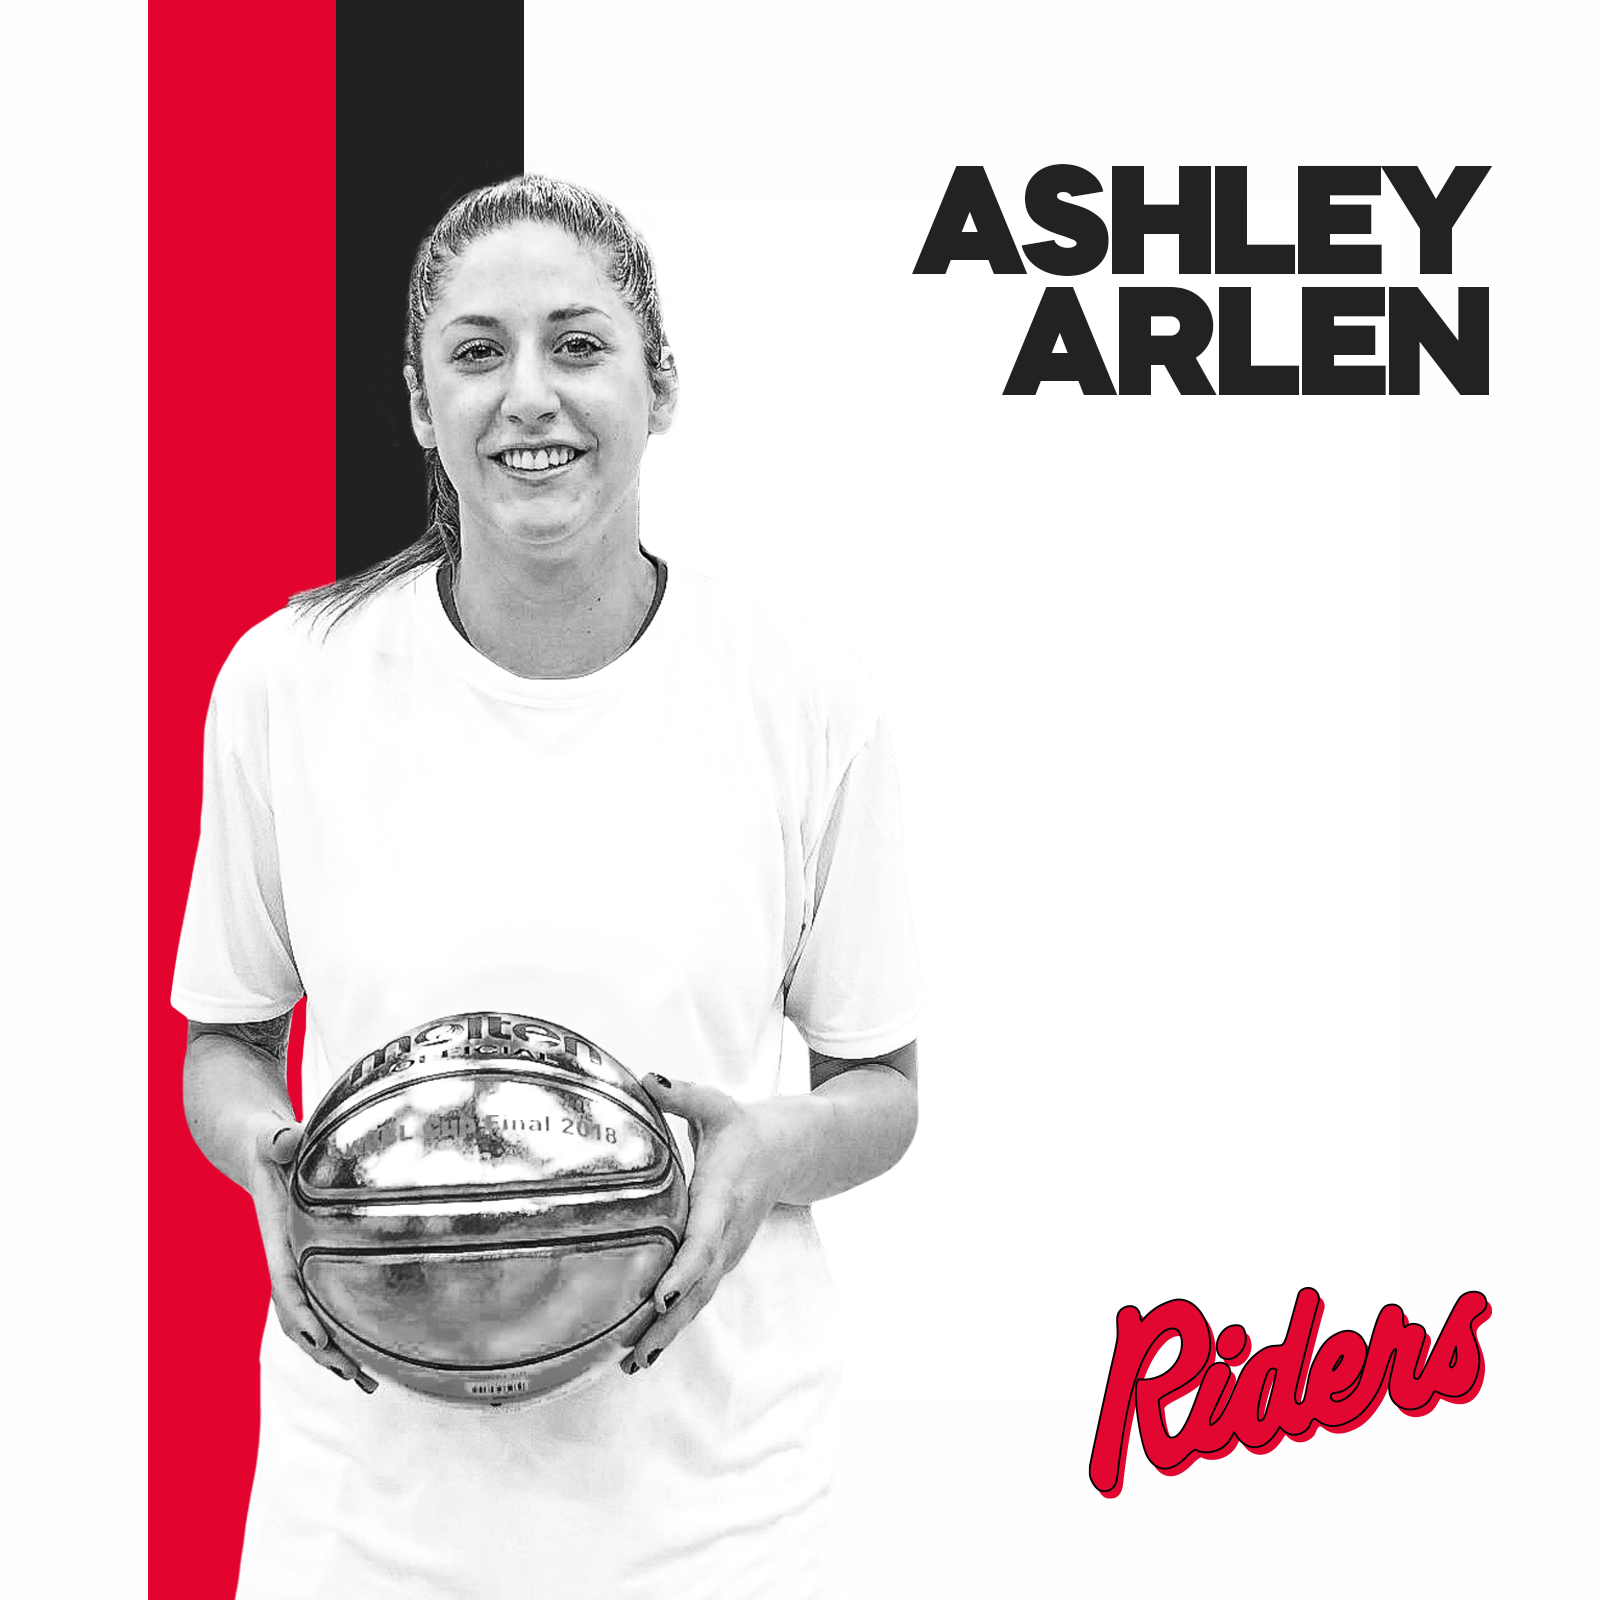 Ashley Arlen